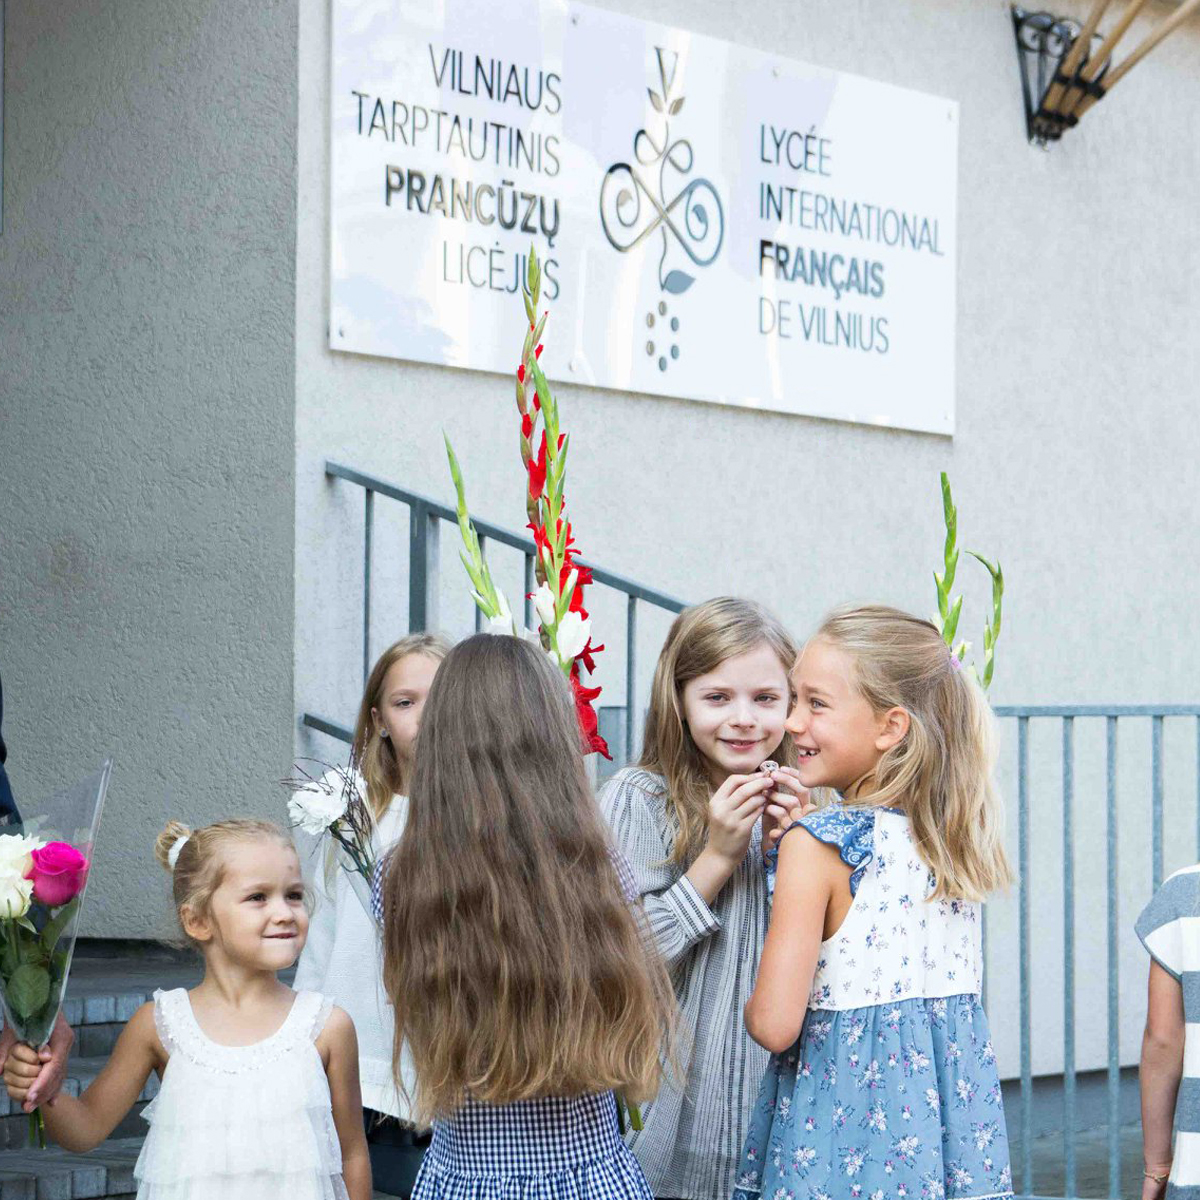 Lycée International Français de Vilnius